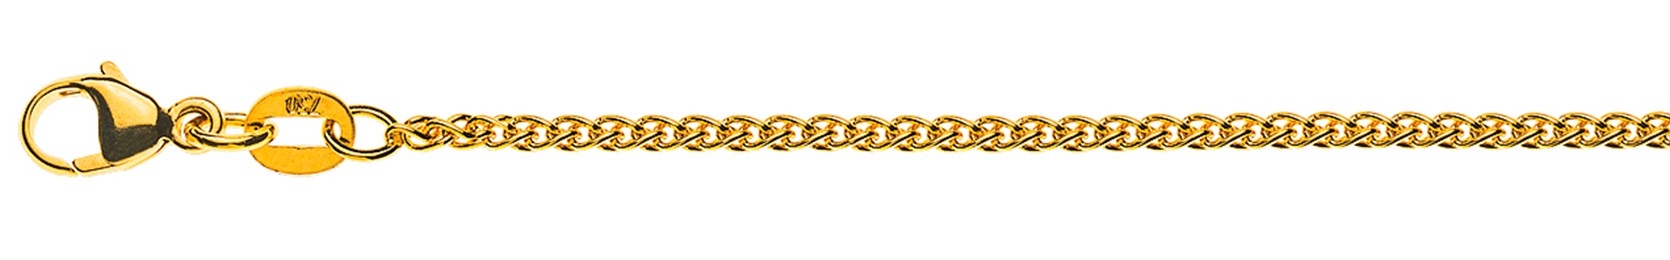 AURONOS Élégance Halskette Gelbgold 14K Zopfkette 42cm 1.6mm